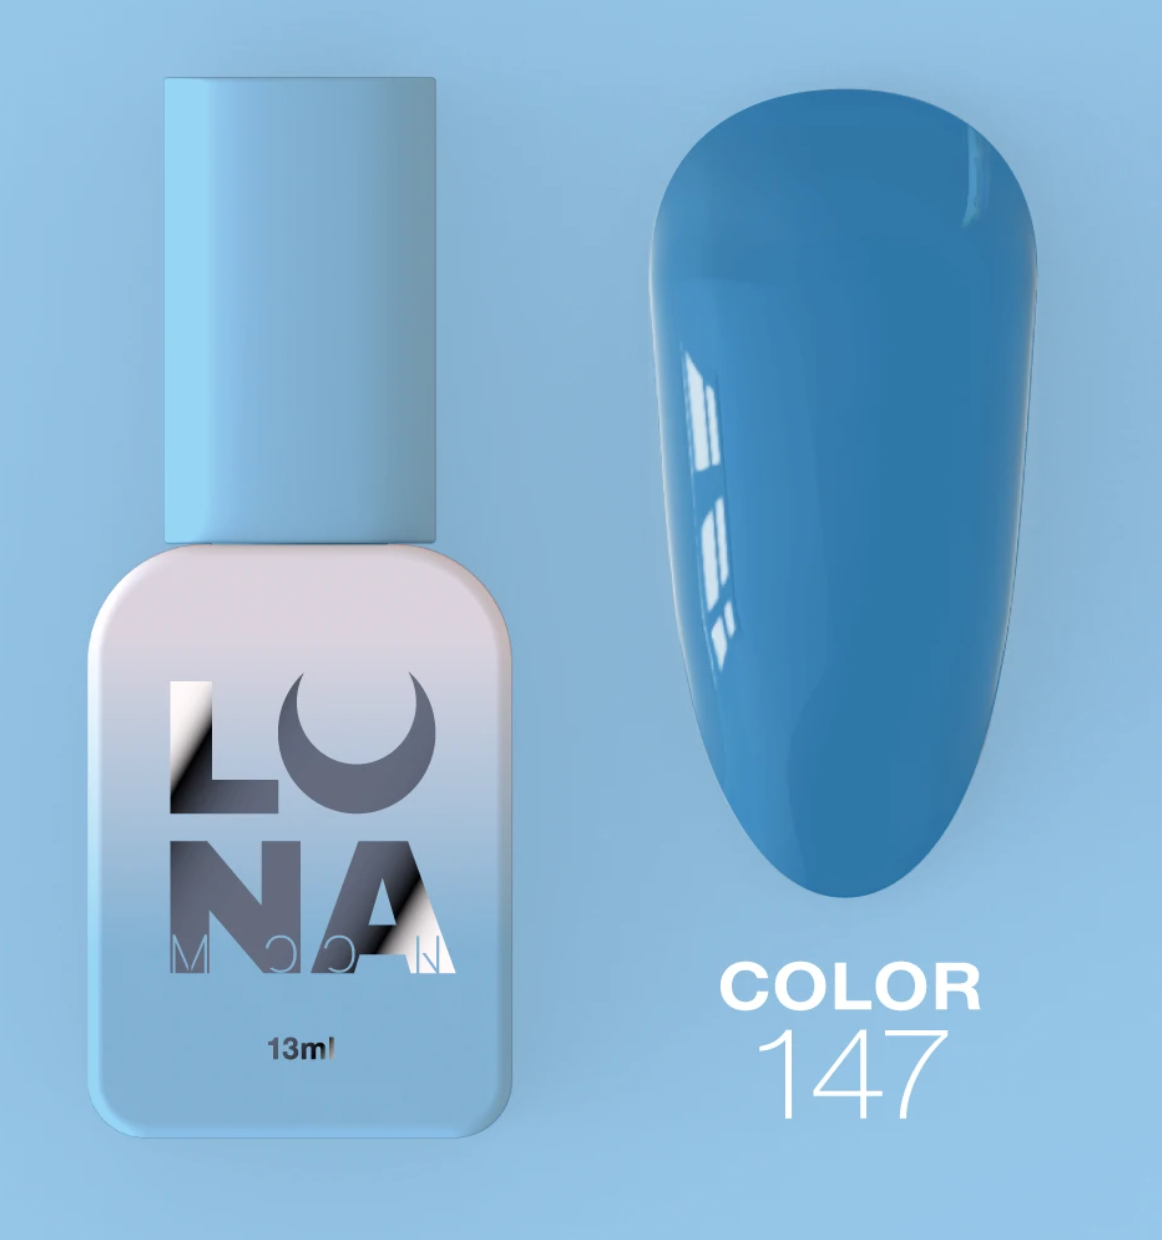 Гель-лак Luna Color №147 голубой, 13 мл - купить гель-лаки luna в Киеве и Украине, цена на гель-лаки luna в интернет магазине все для маникюра | lillyshop